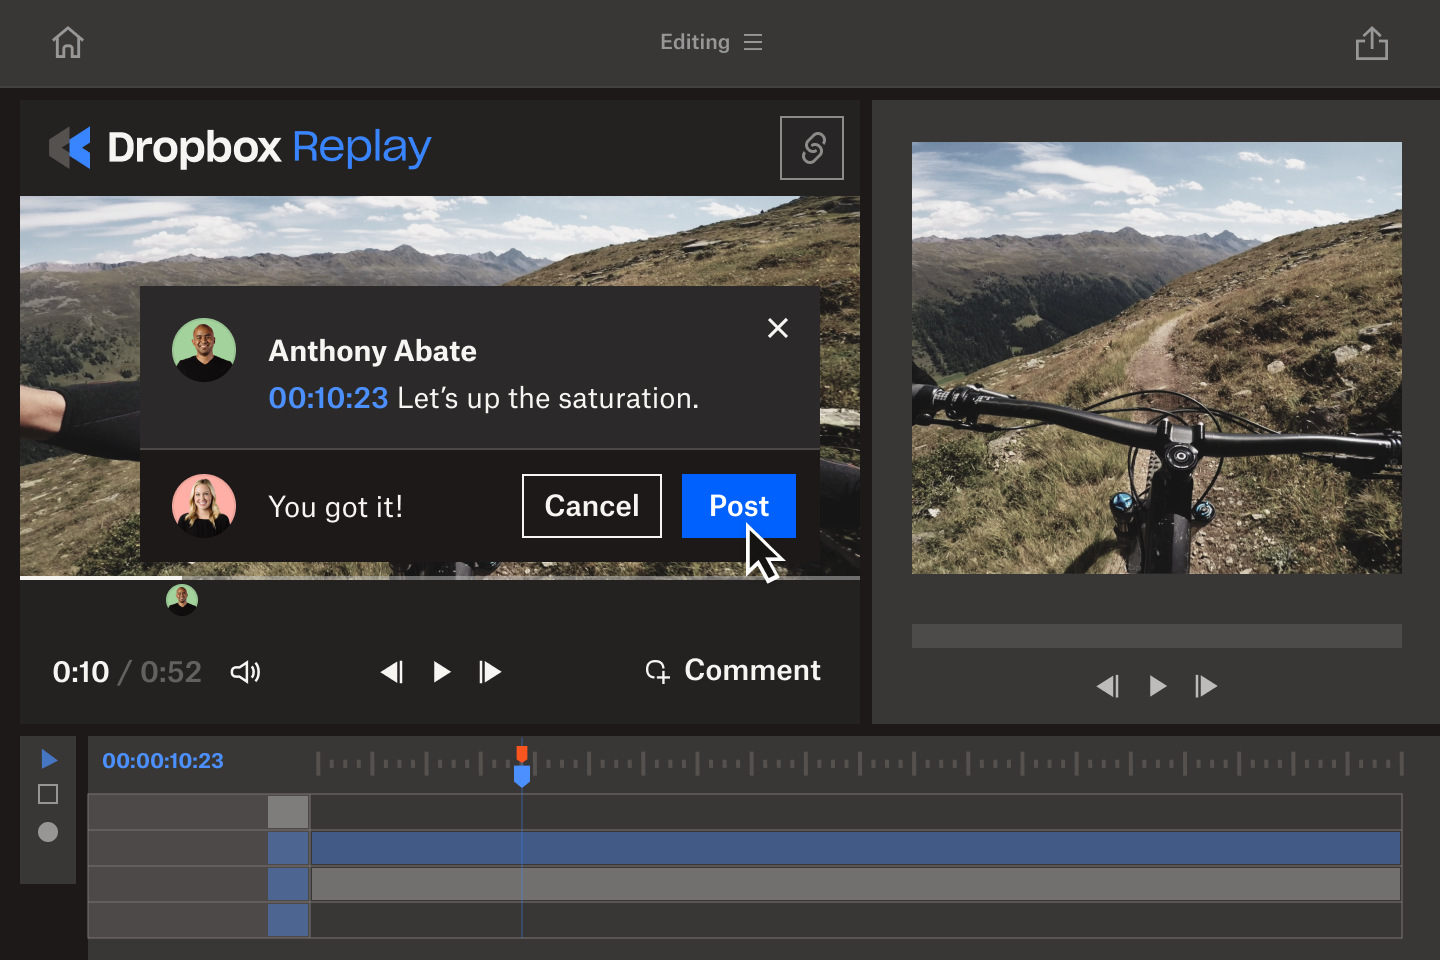 Adnotacje z dokładnością do jednej klatki w Dropbox Replay ułatwiają współpracę przy tworzeniu filmów